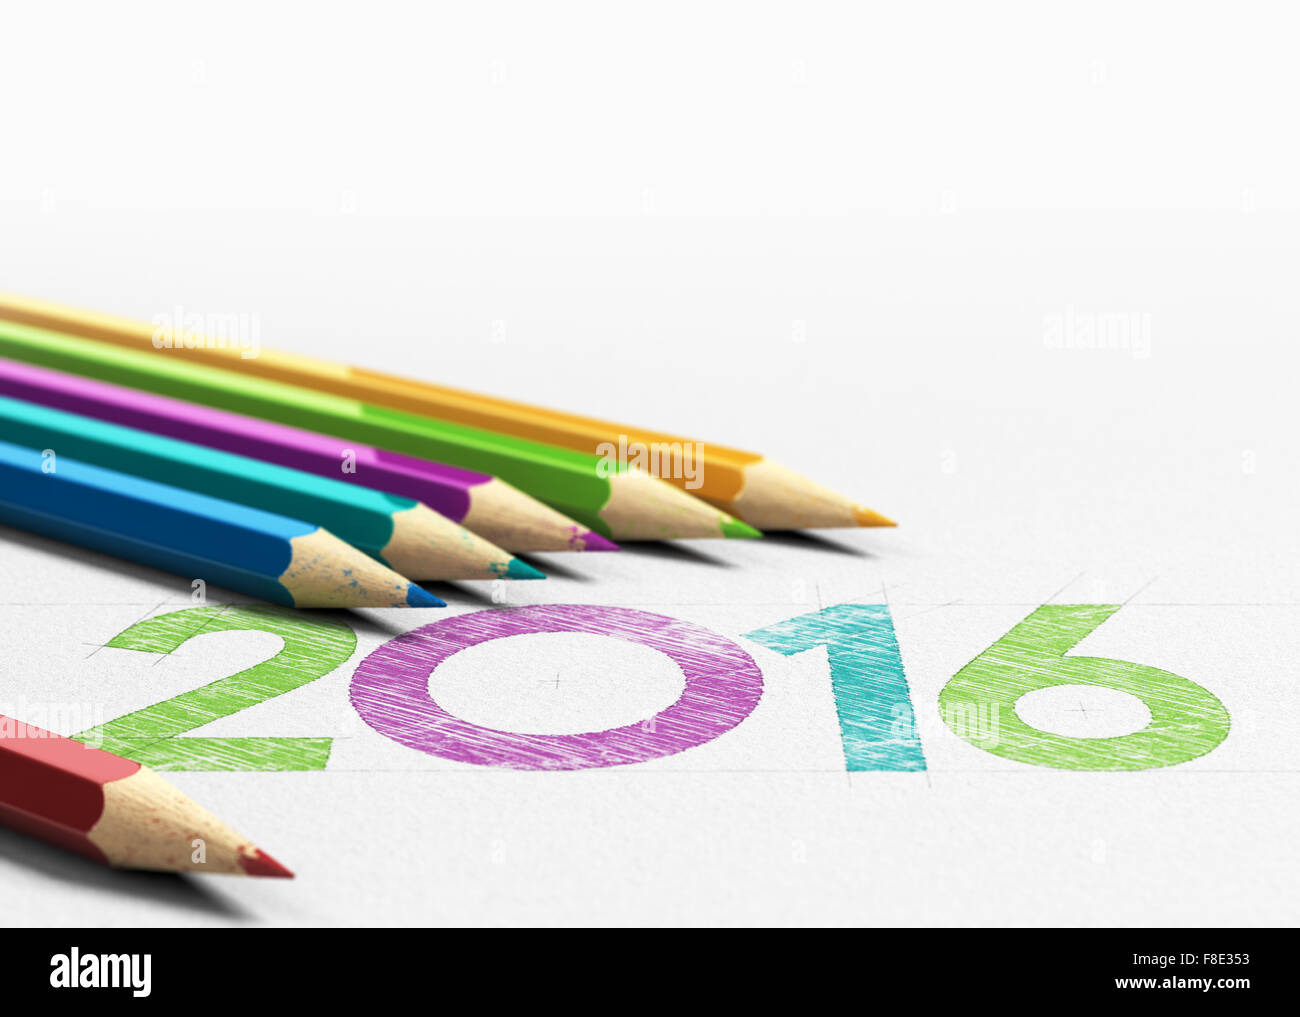 Año nuevo 2016 manuscrito en un papel con textura de madera sourounding seis lápices. Imagen conceptual para el diseño de tarjetas de felicitación volver Foto de stock